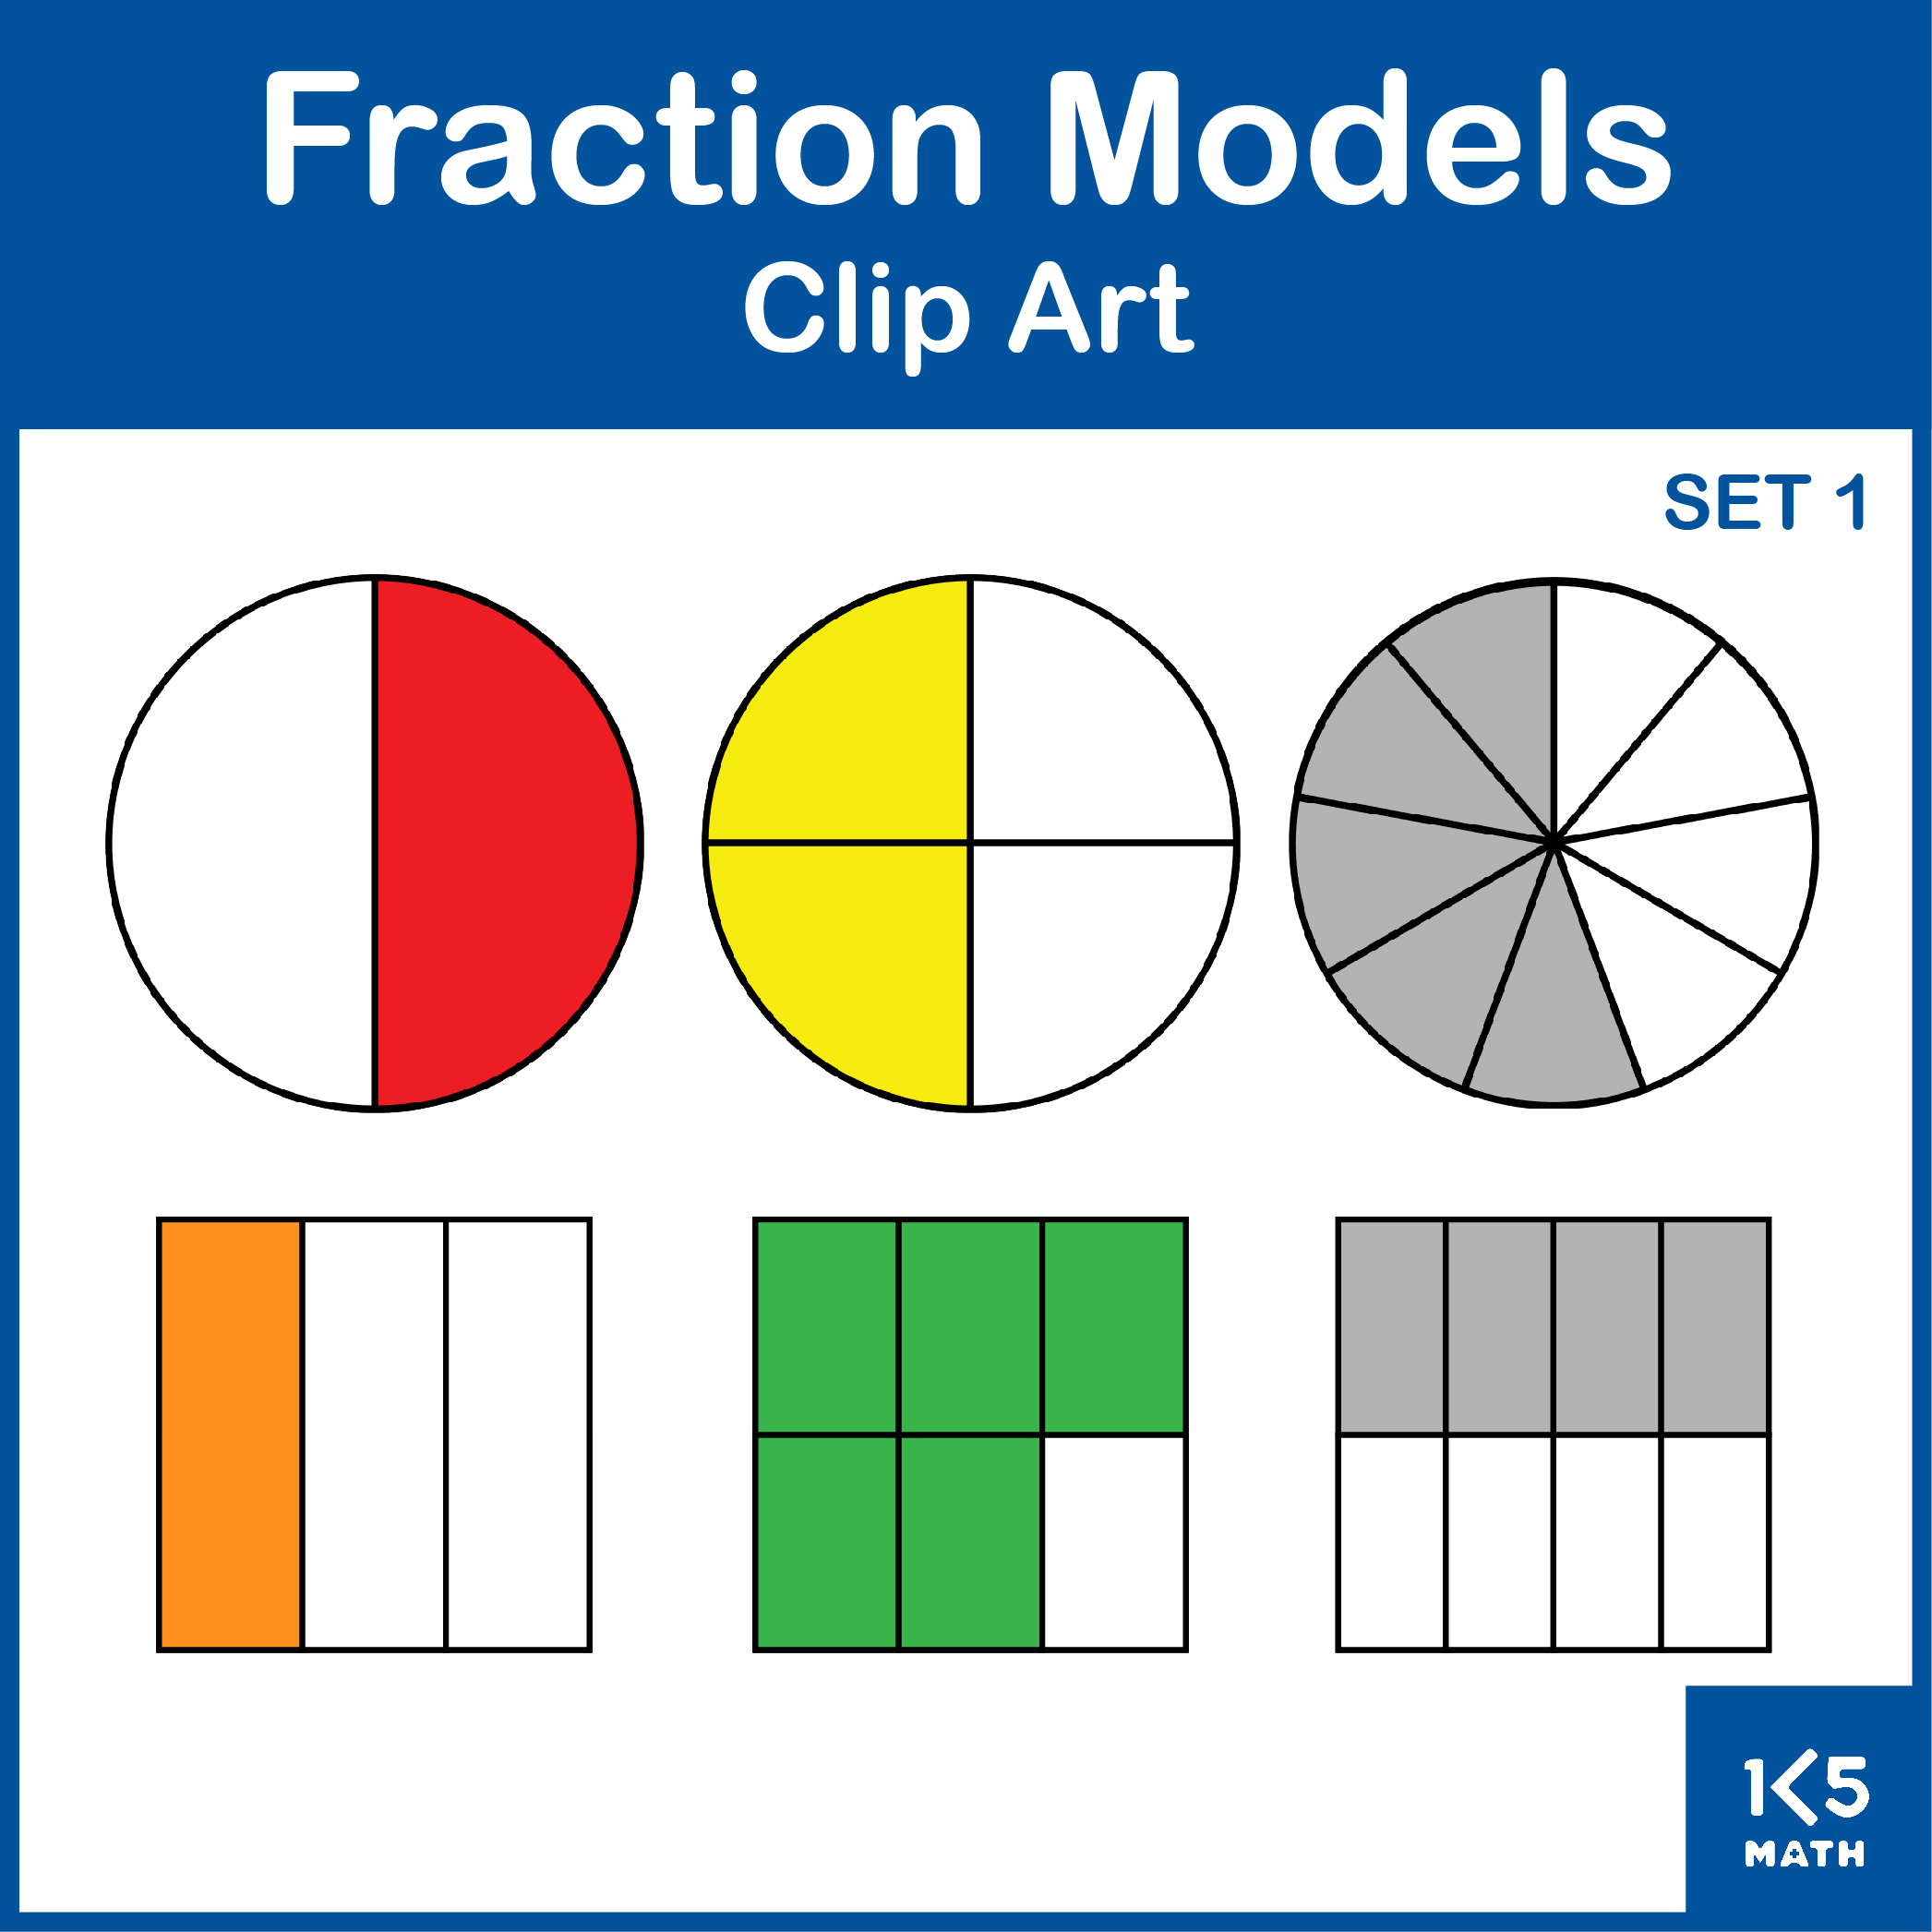 Fraction Models Clip Art: Set 2